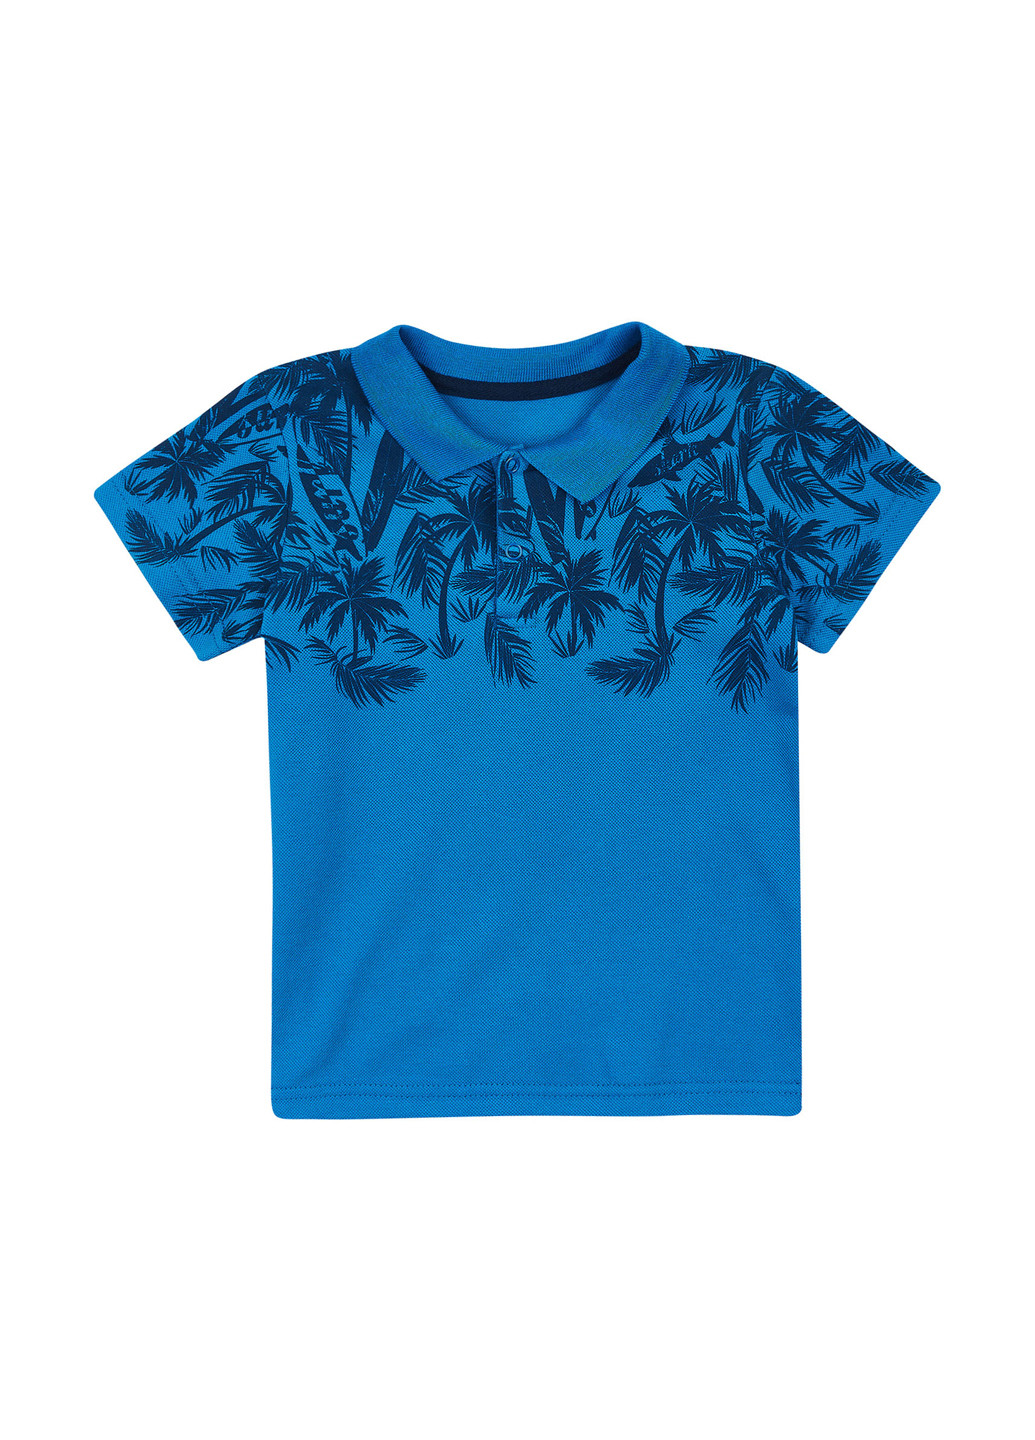 Синяя детская футболка-поло для мальчика Z16 с рисунком